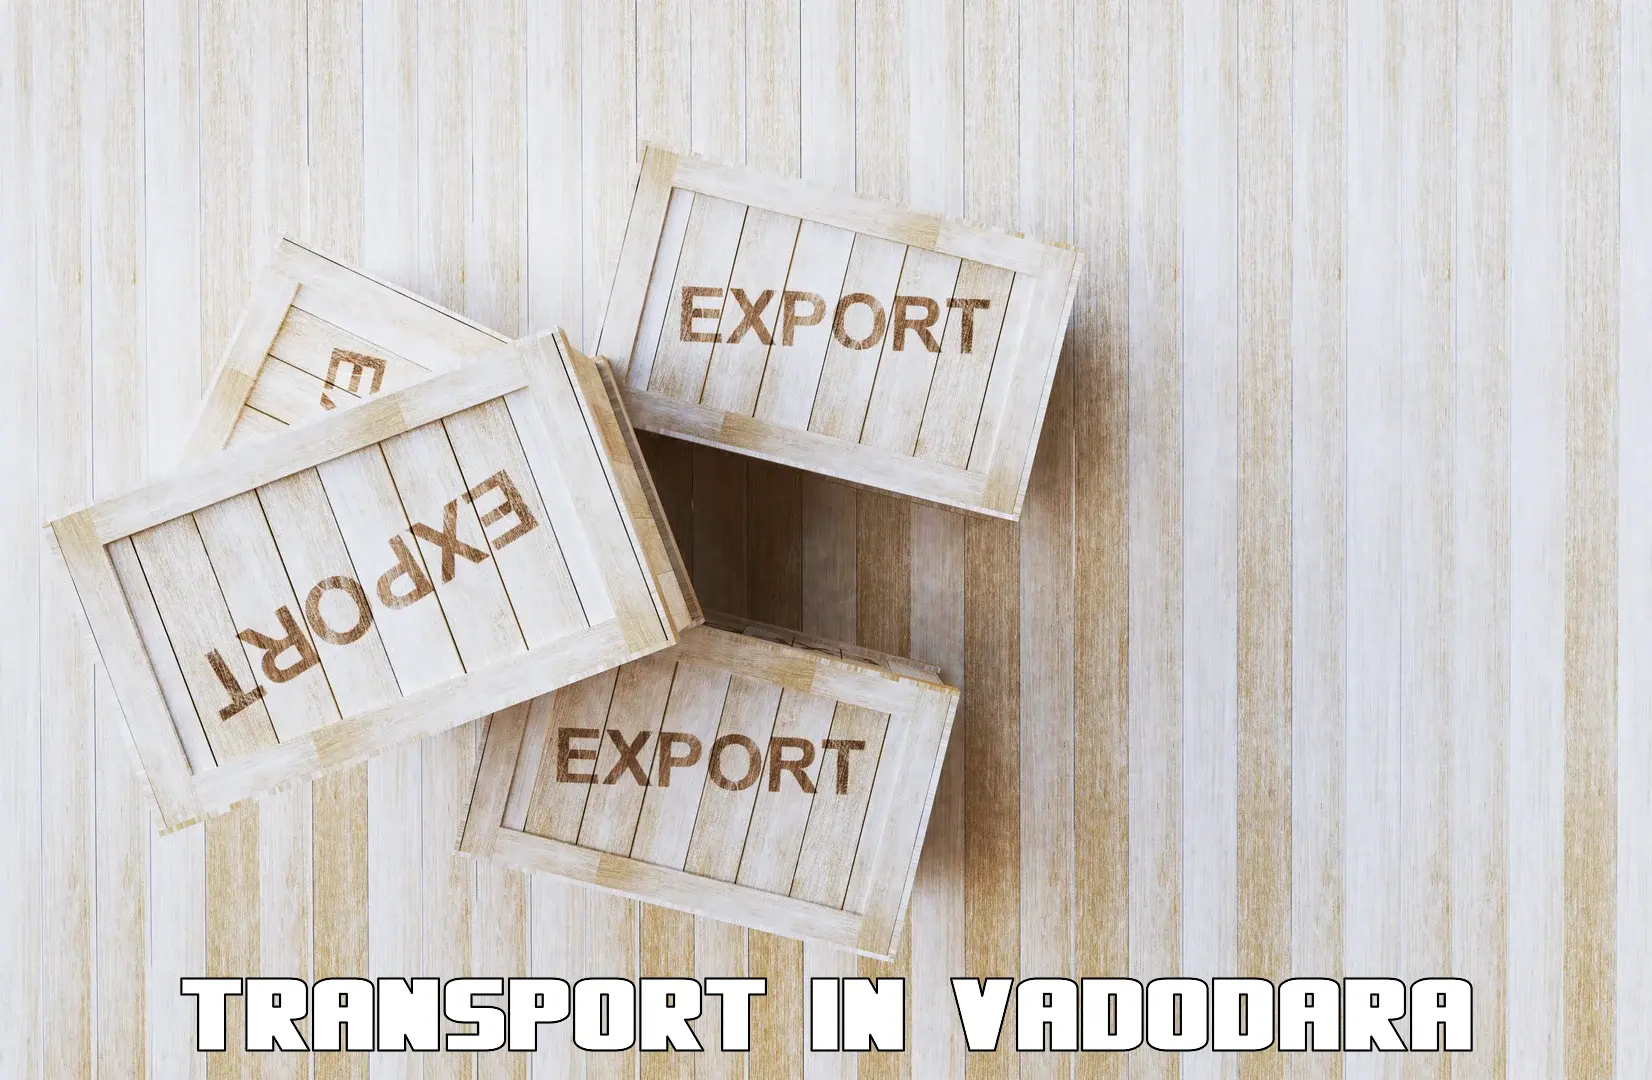 Cycle transportation service in Vadodara